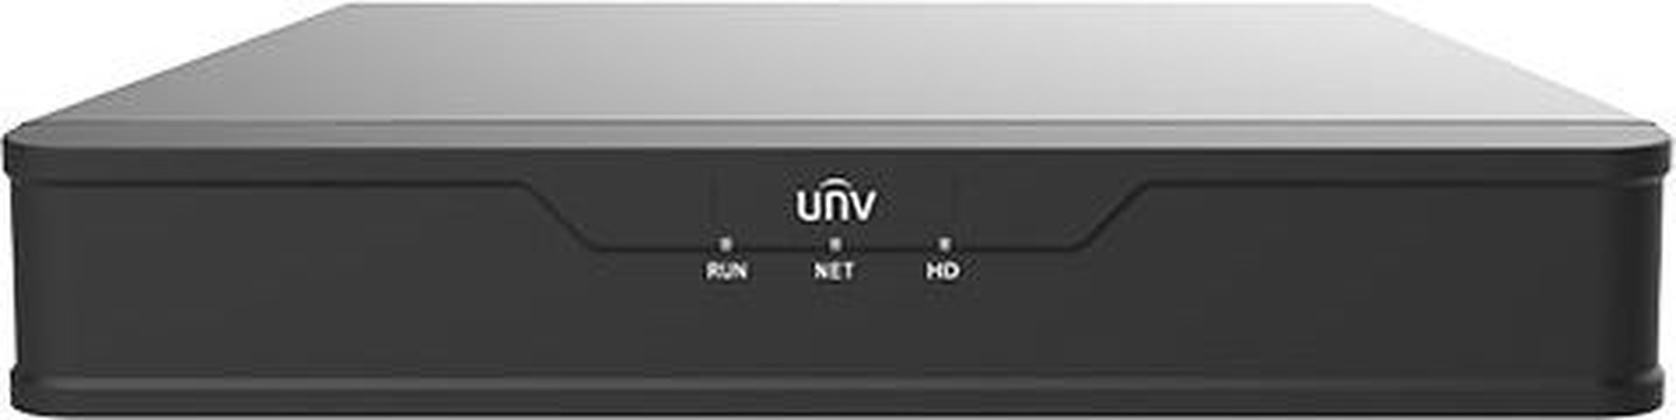 Видеорегистратор 4-канальный "Uniview" [NVR301-04X-P4], 1xHDD, HDMI/VGA, RJ45